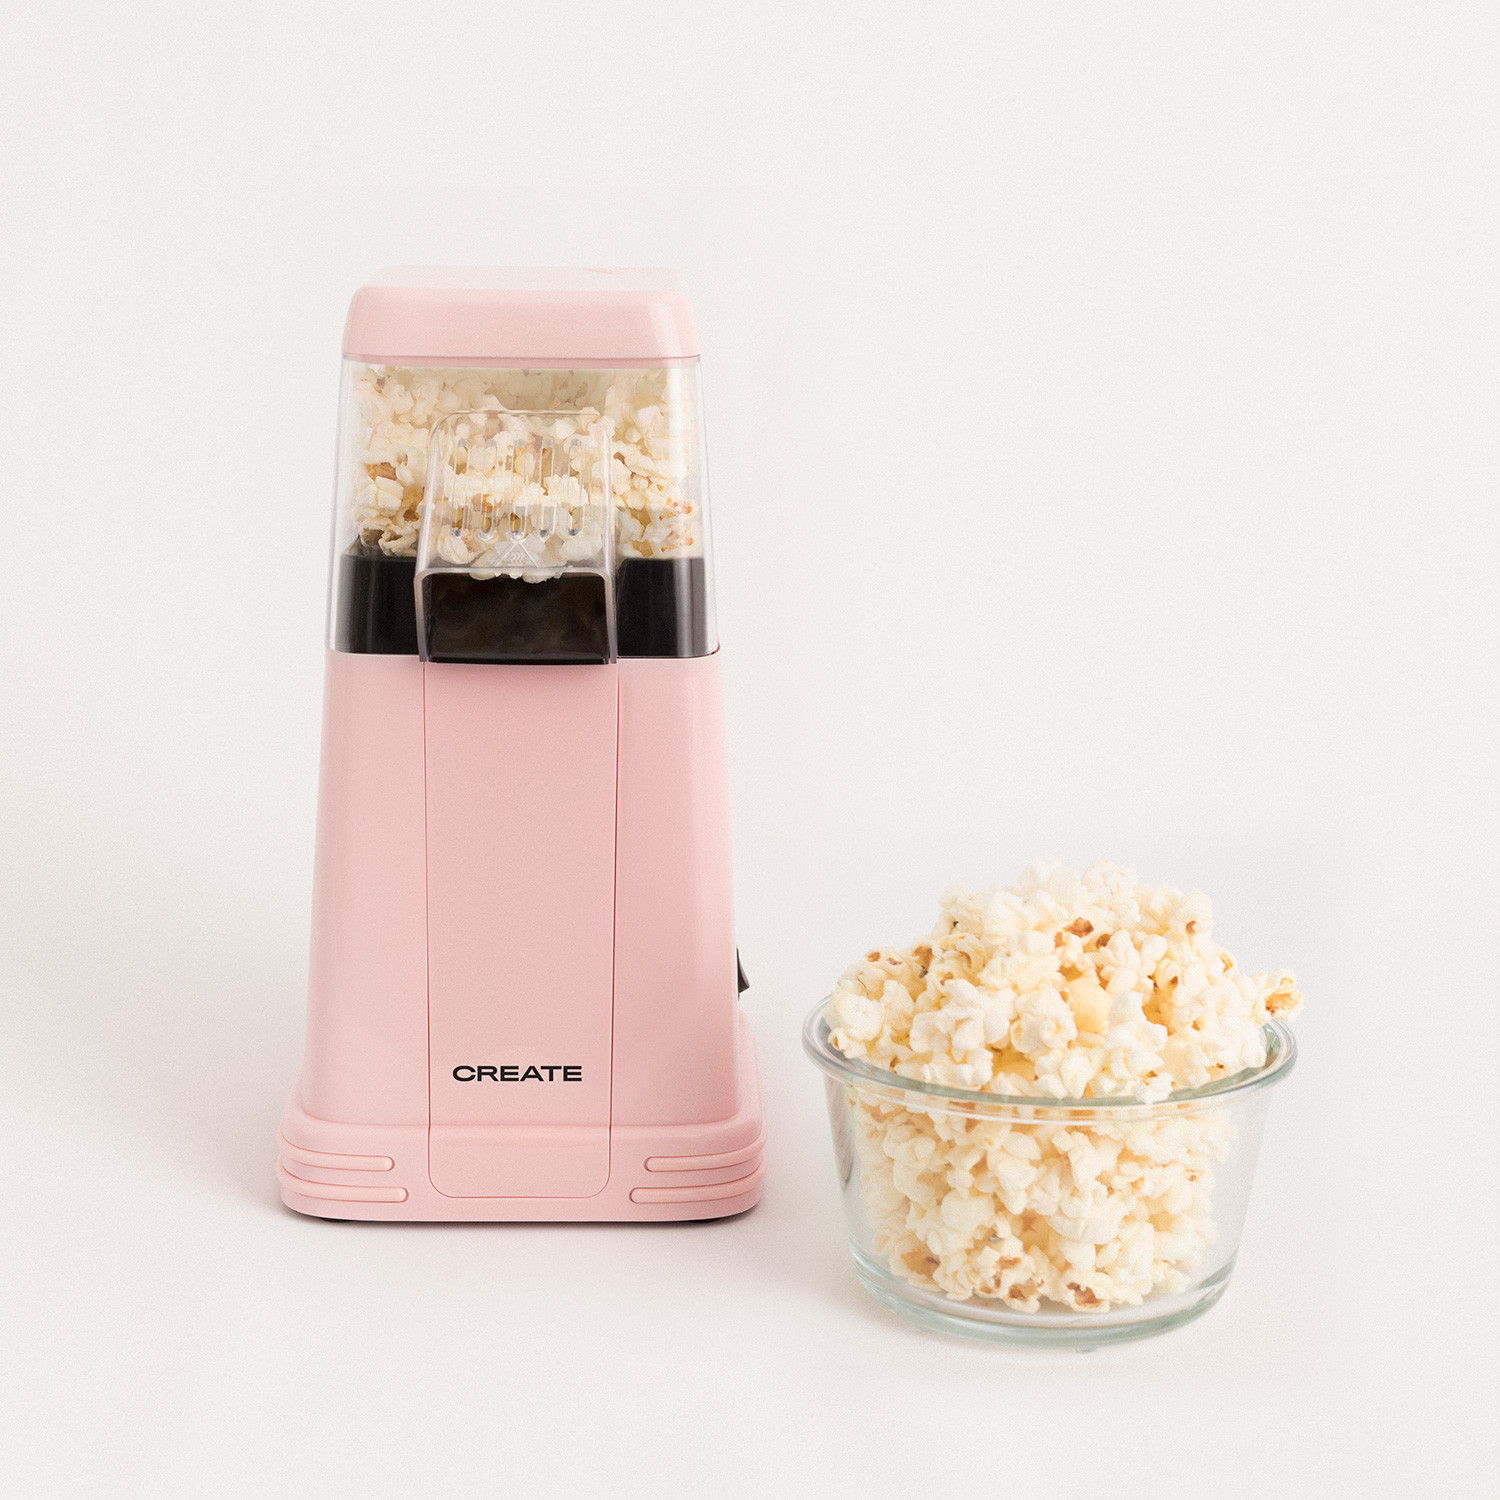 Nictemaw Machine à popcorn Noir, 1200W Popcorn Maker Sans graisse ni huile, Snack sain pour la maison 